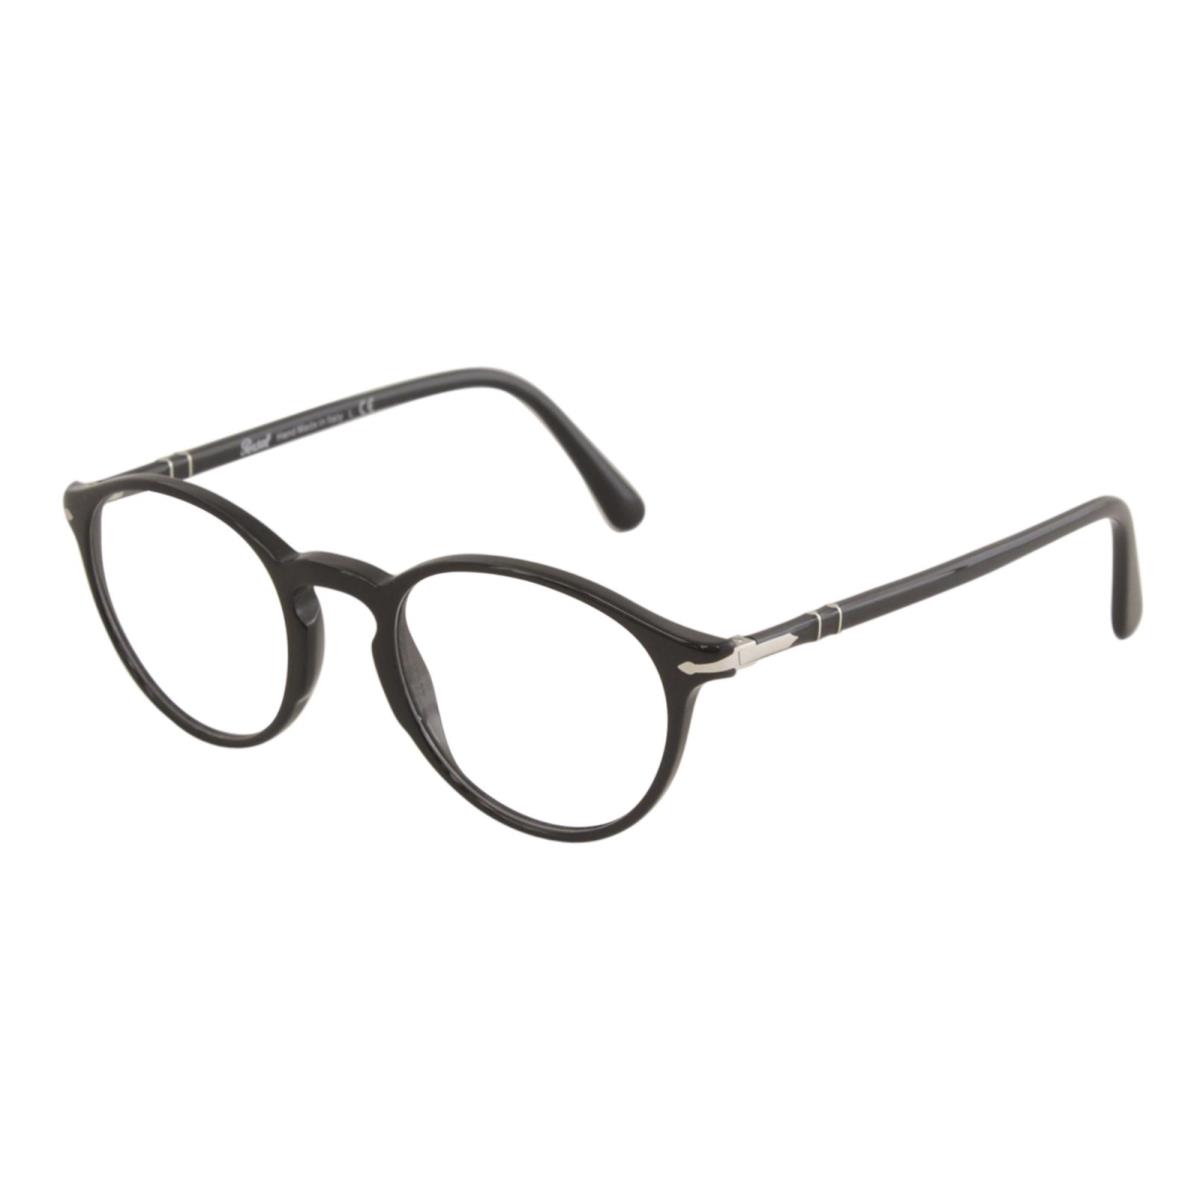 Persol Eyeglasses 3174-V 95 49-21 145 Black Round Frames with Spring Hinges - Black Frame, Demos with Imprint Lens